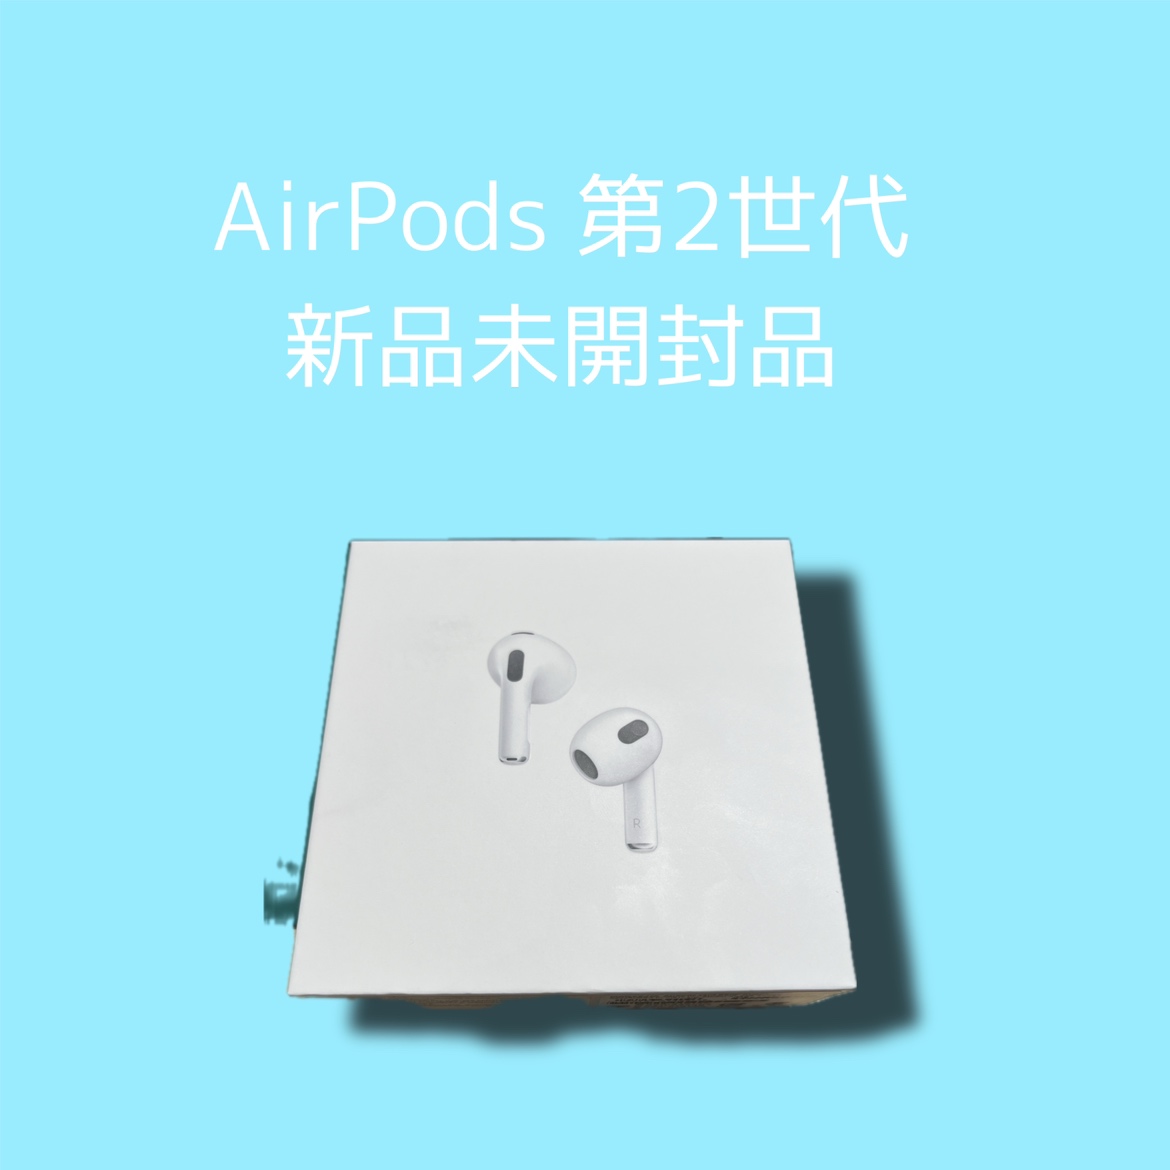 AirPods 第2世代・新品未開封品【天神地下街店】